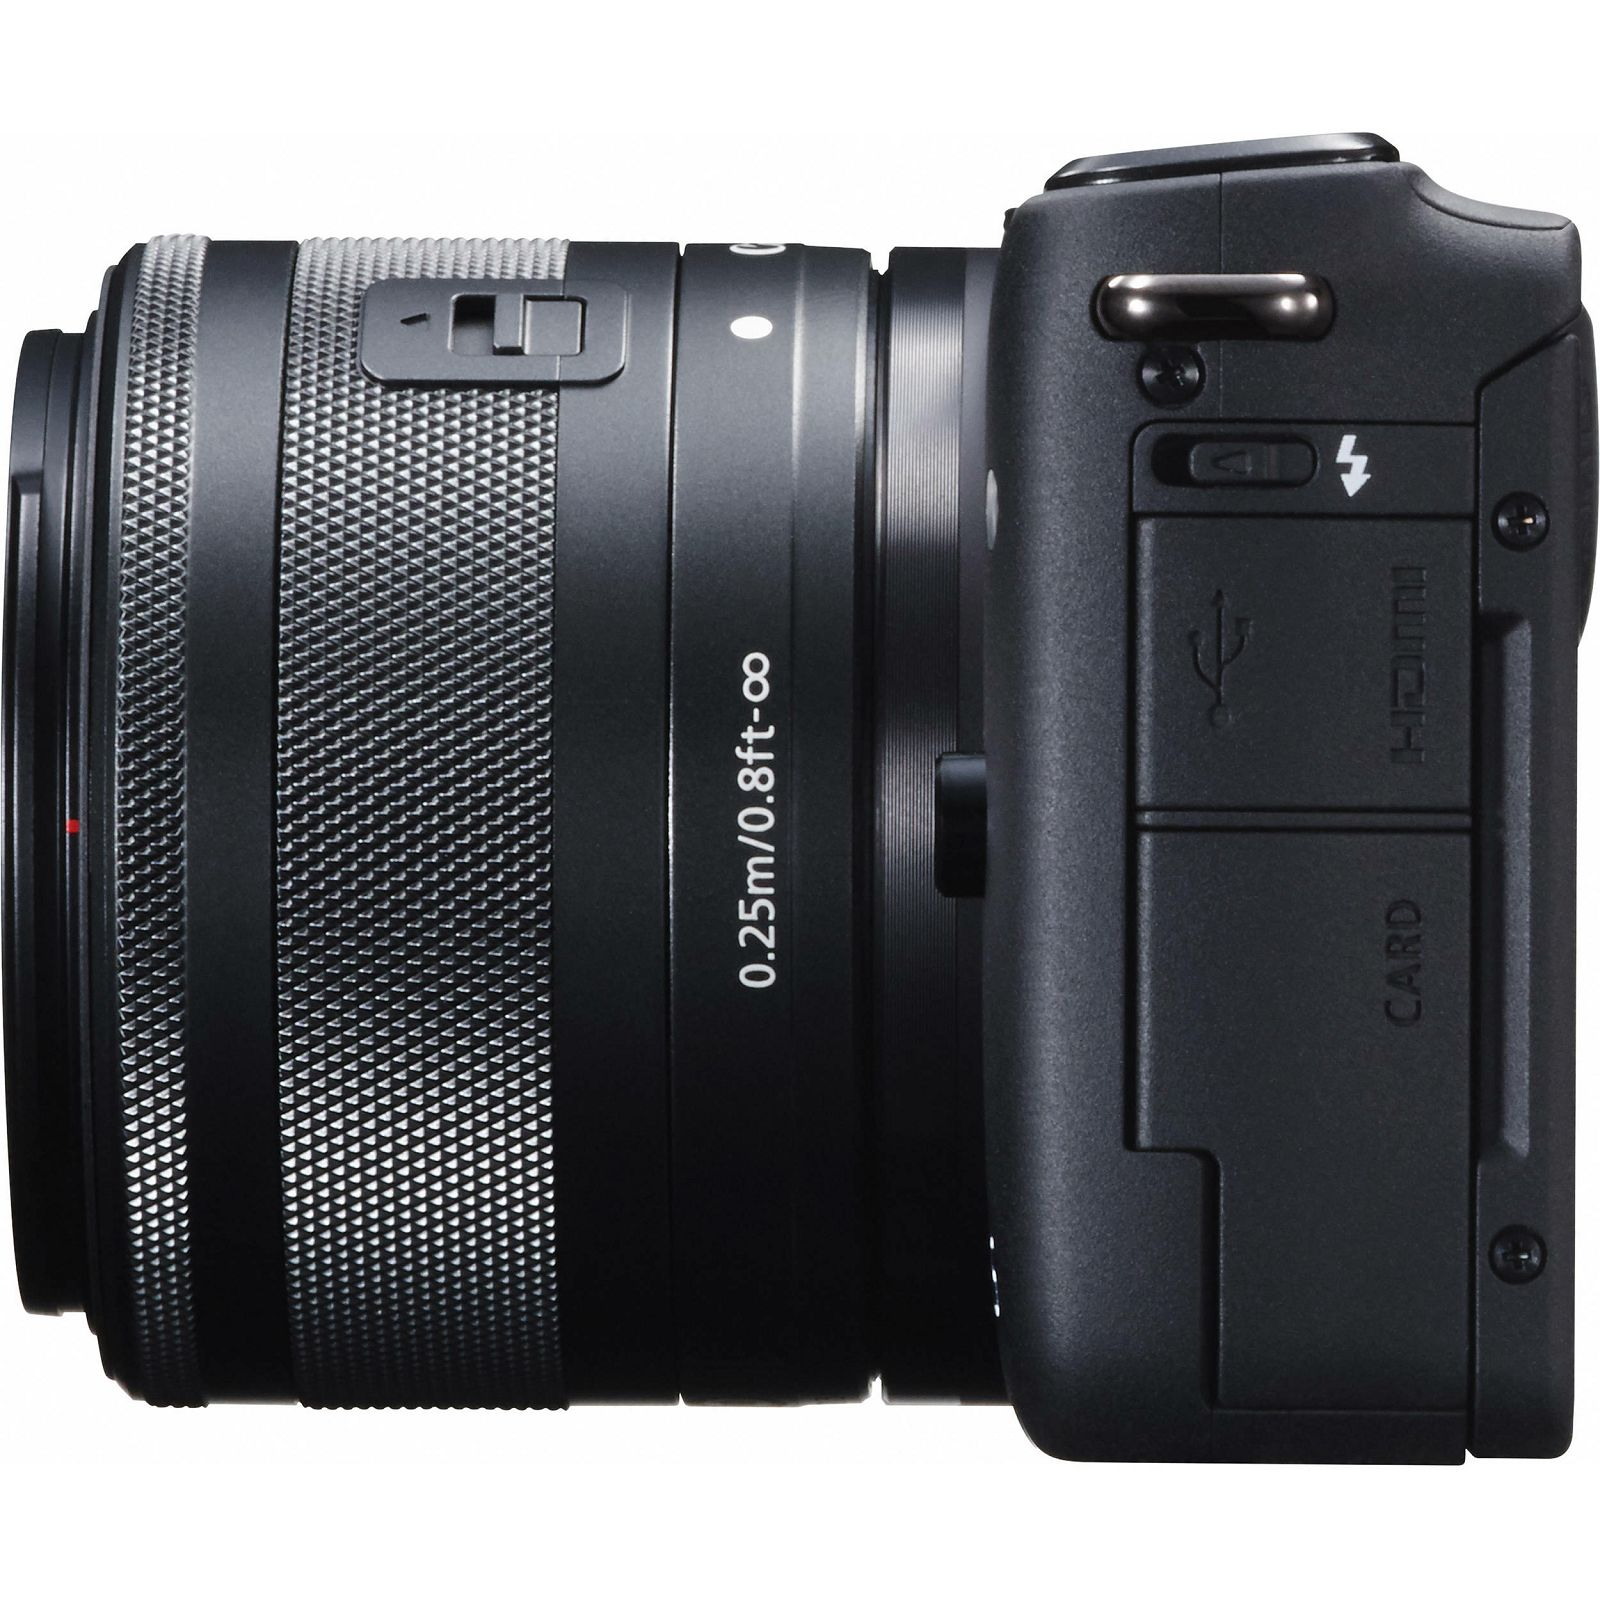 Canon EOS M10 15-45 KIT Black crni WIFI Mirrorless Digital Camera bezzrcalni digitalni fotoaparat + 15-45mm objektiv (0584C012AA)